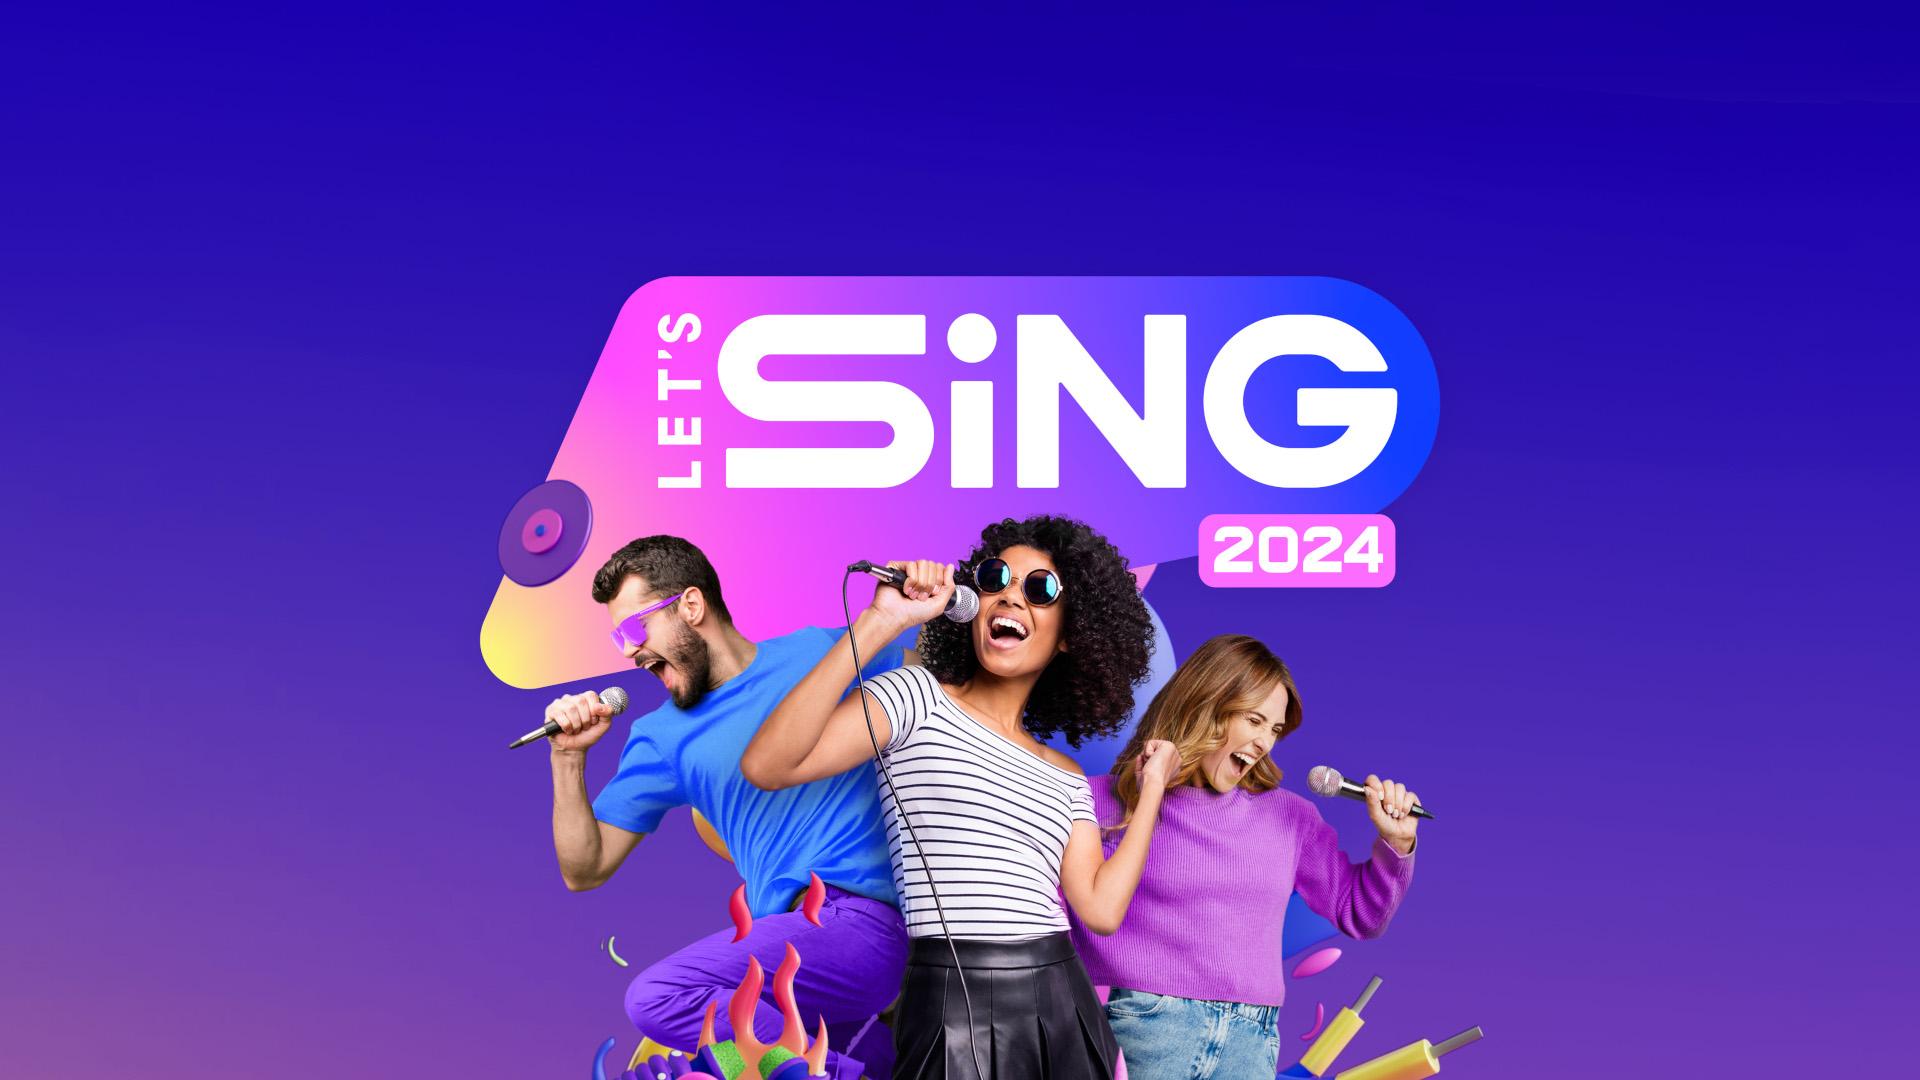 Let’s Sing 2024: A Festa do Karaokê Chega aos Consoles!